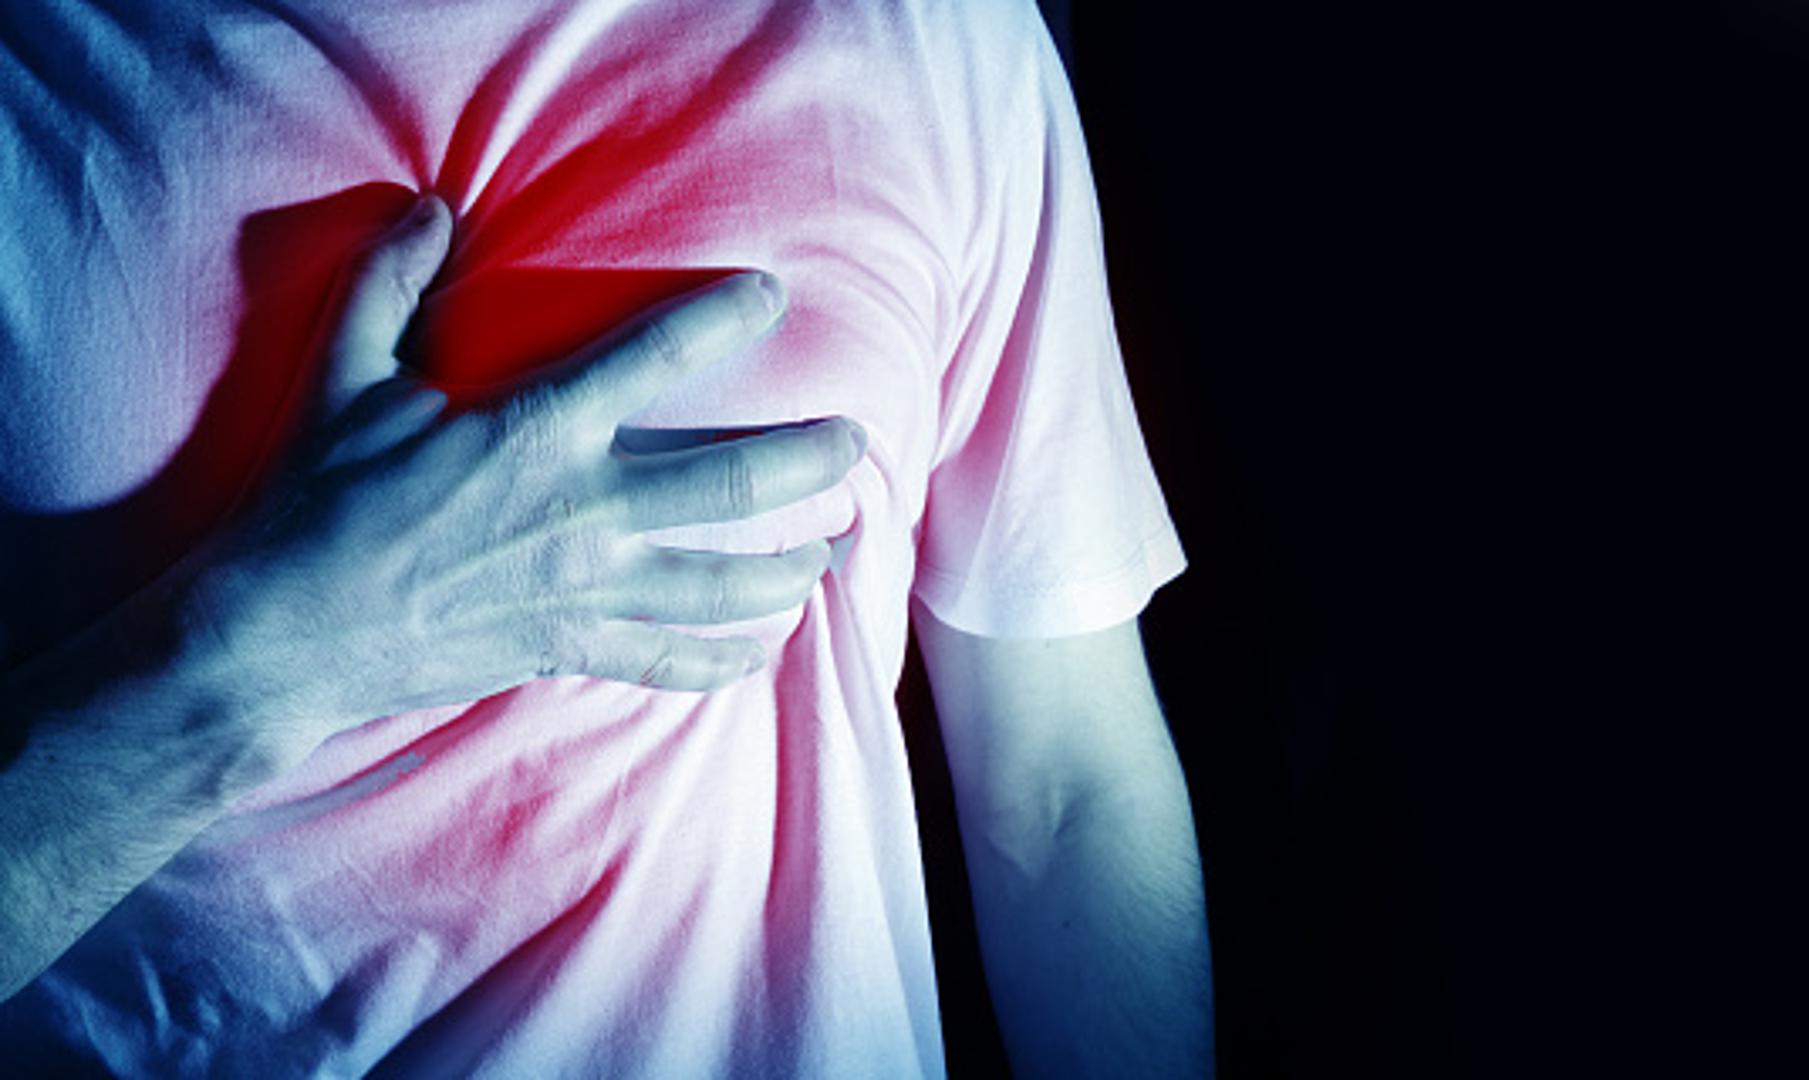 Znakovi da je riječ o mogućem srčanom udaru su i osjećaj mučnine, hladan znoj i ošamućenost. Kod muškaraca je najčešći znak upozorenja od srčanog udara bol u prsima, dok žene češće imaju simptome kratkog daha, mučnine i bolne čeljusti – tvrdi Bansal.